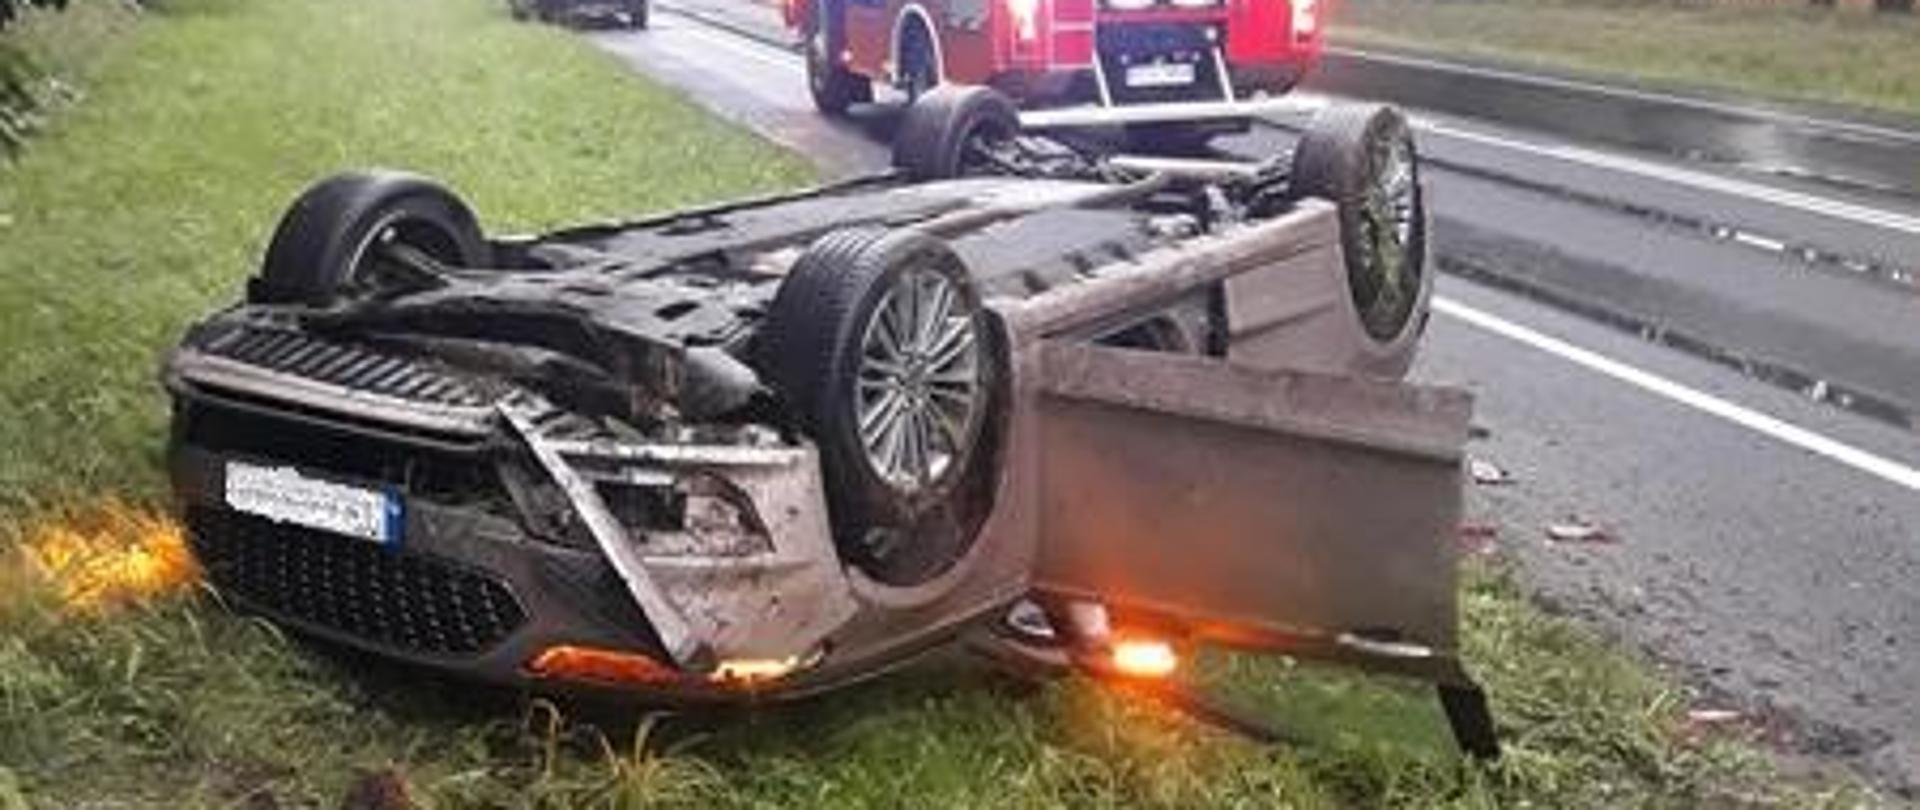 System eCall poinformował o wypadku samochodu w Kierzkowicach